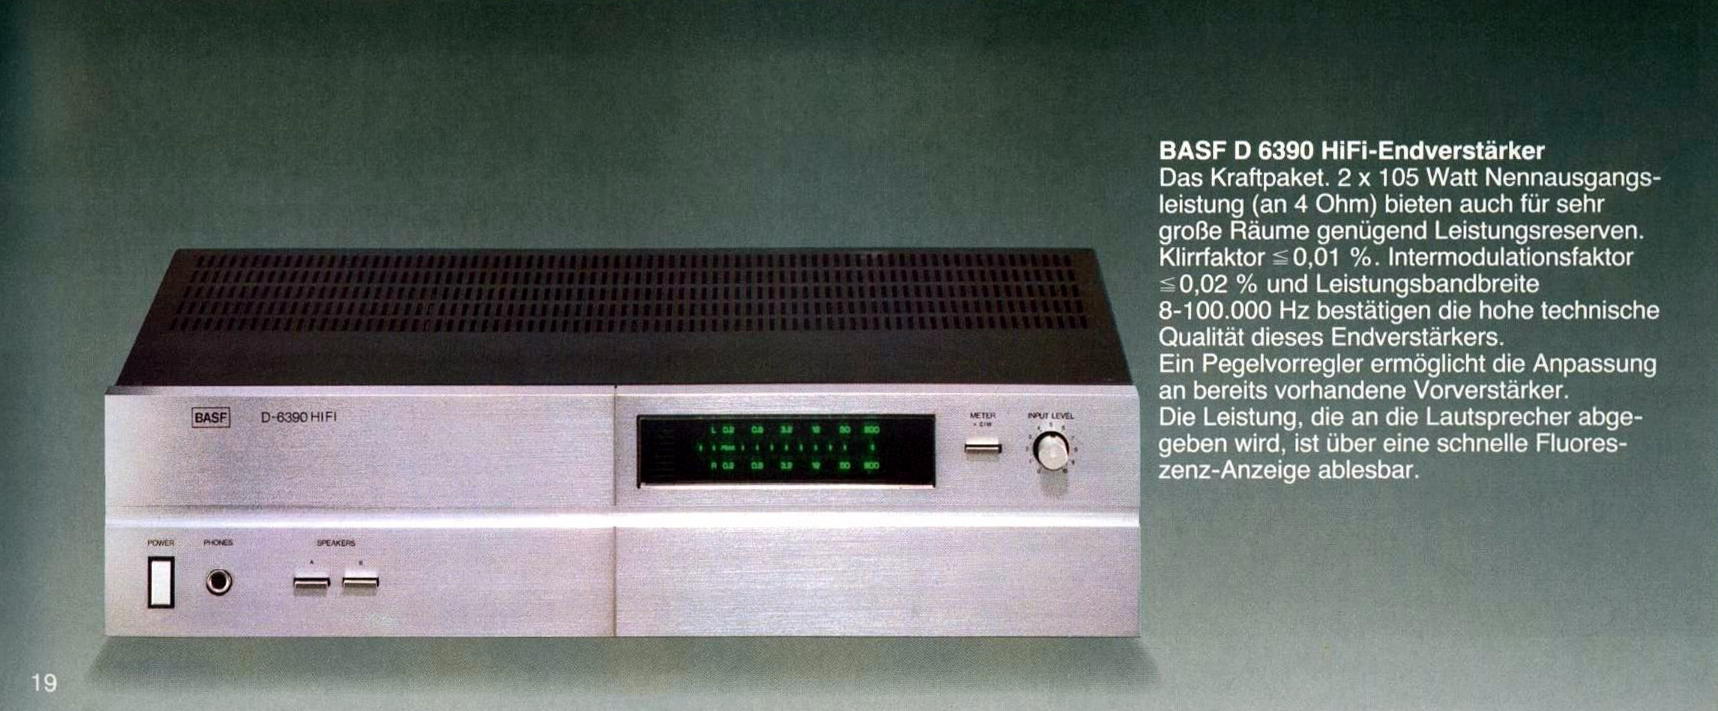 BASF D-6390-Prospekt-2.jpg